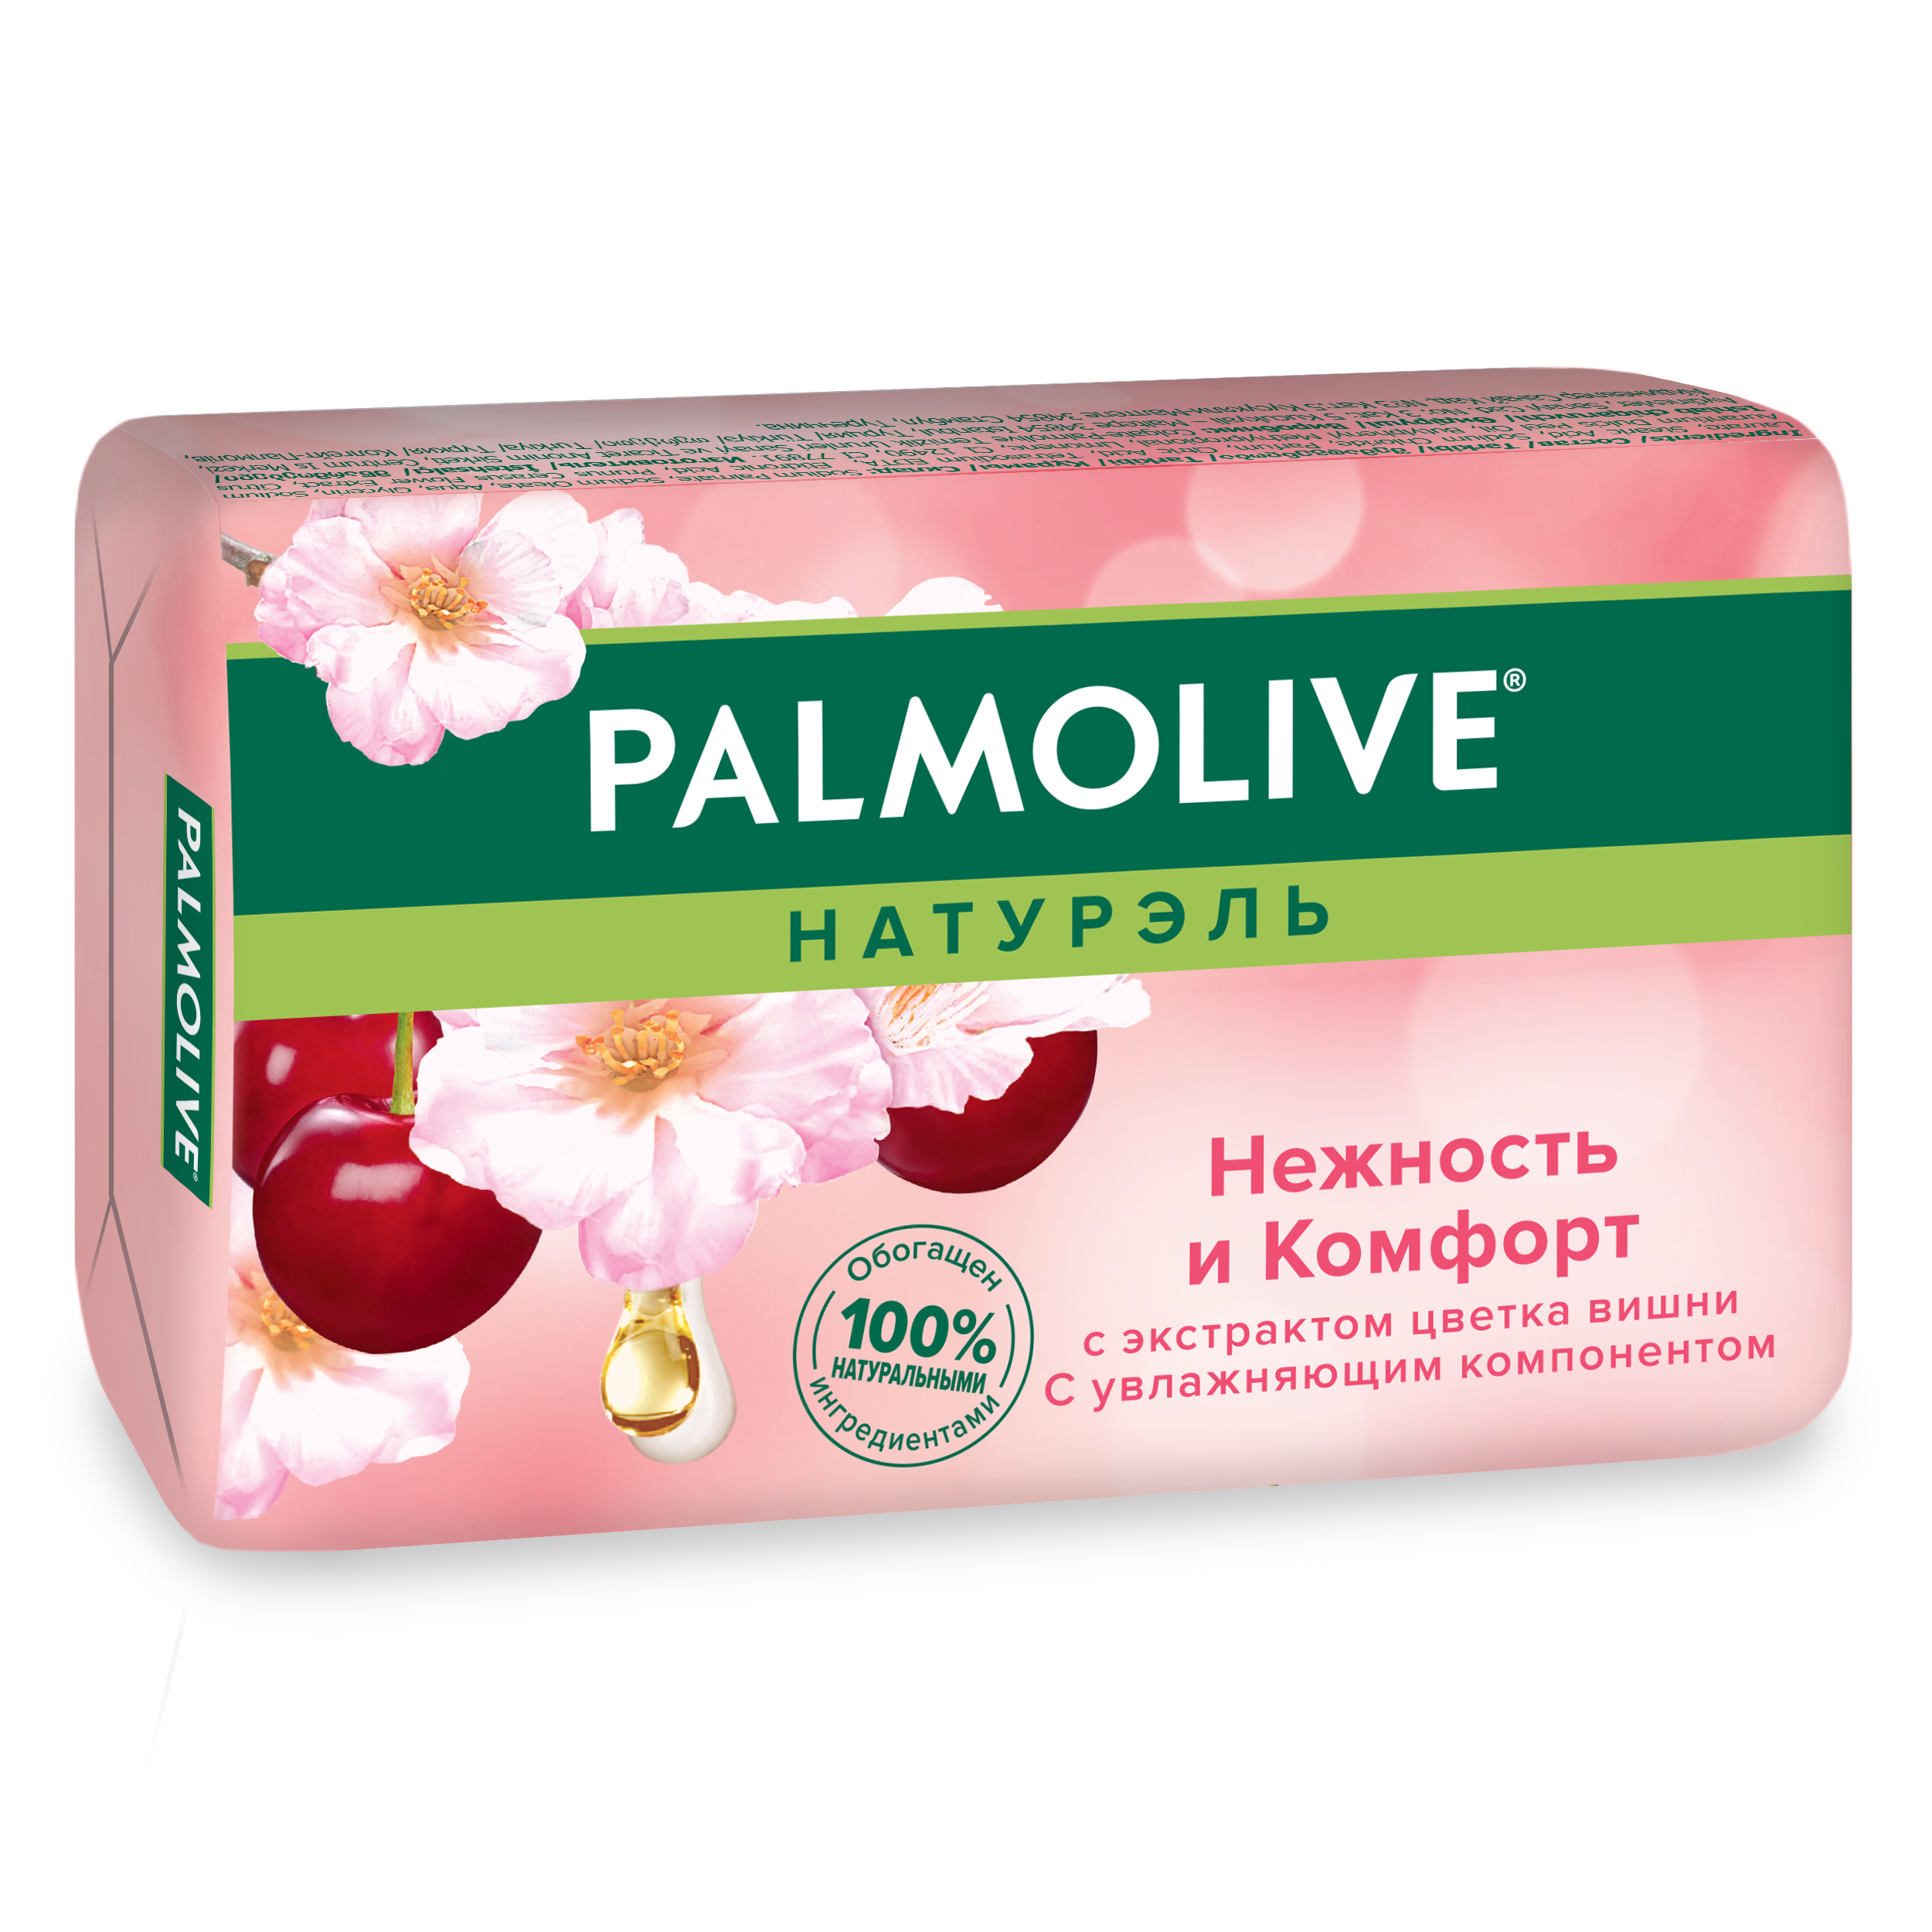 Косметическое мыло Palmolive Натурэль Нежность и комфорт Цветок вишни 90 г косметическое мыло в баню экстракт чистотела ручная работа